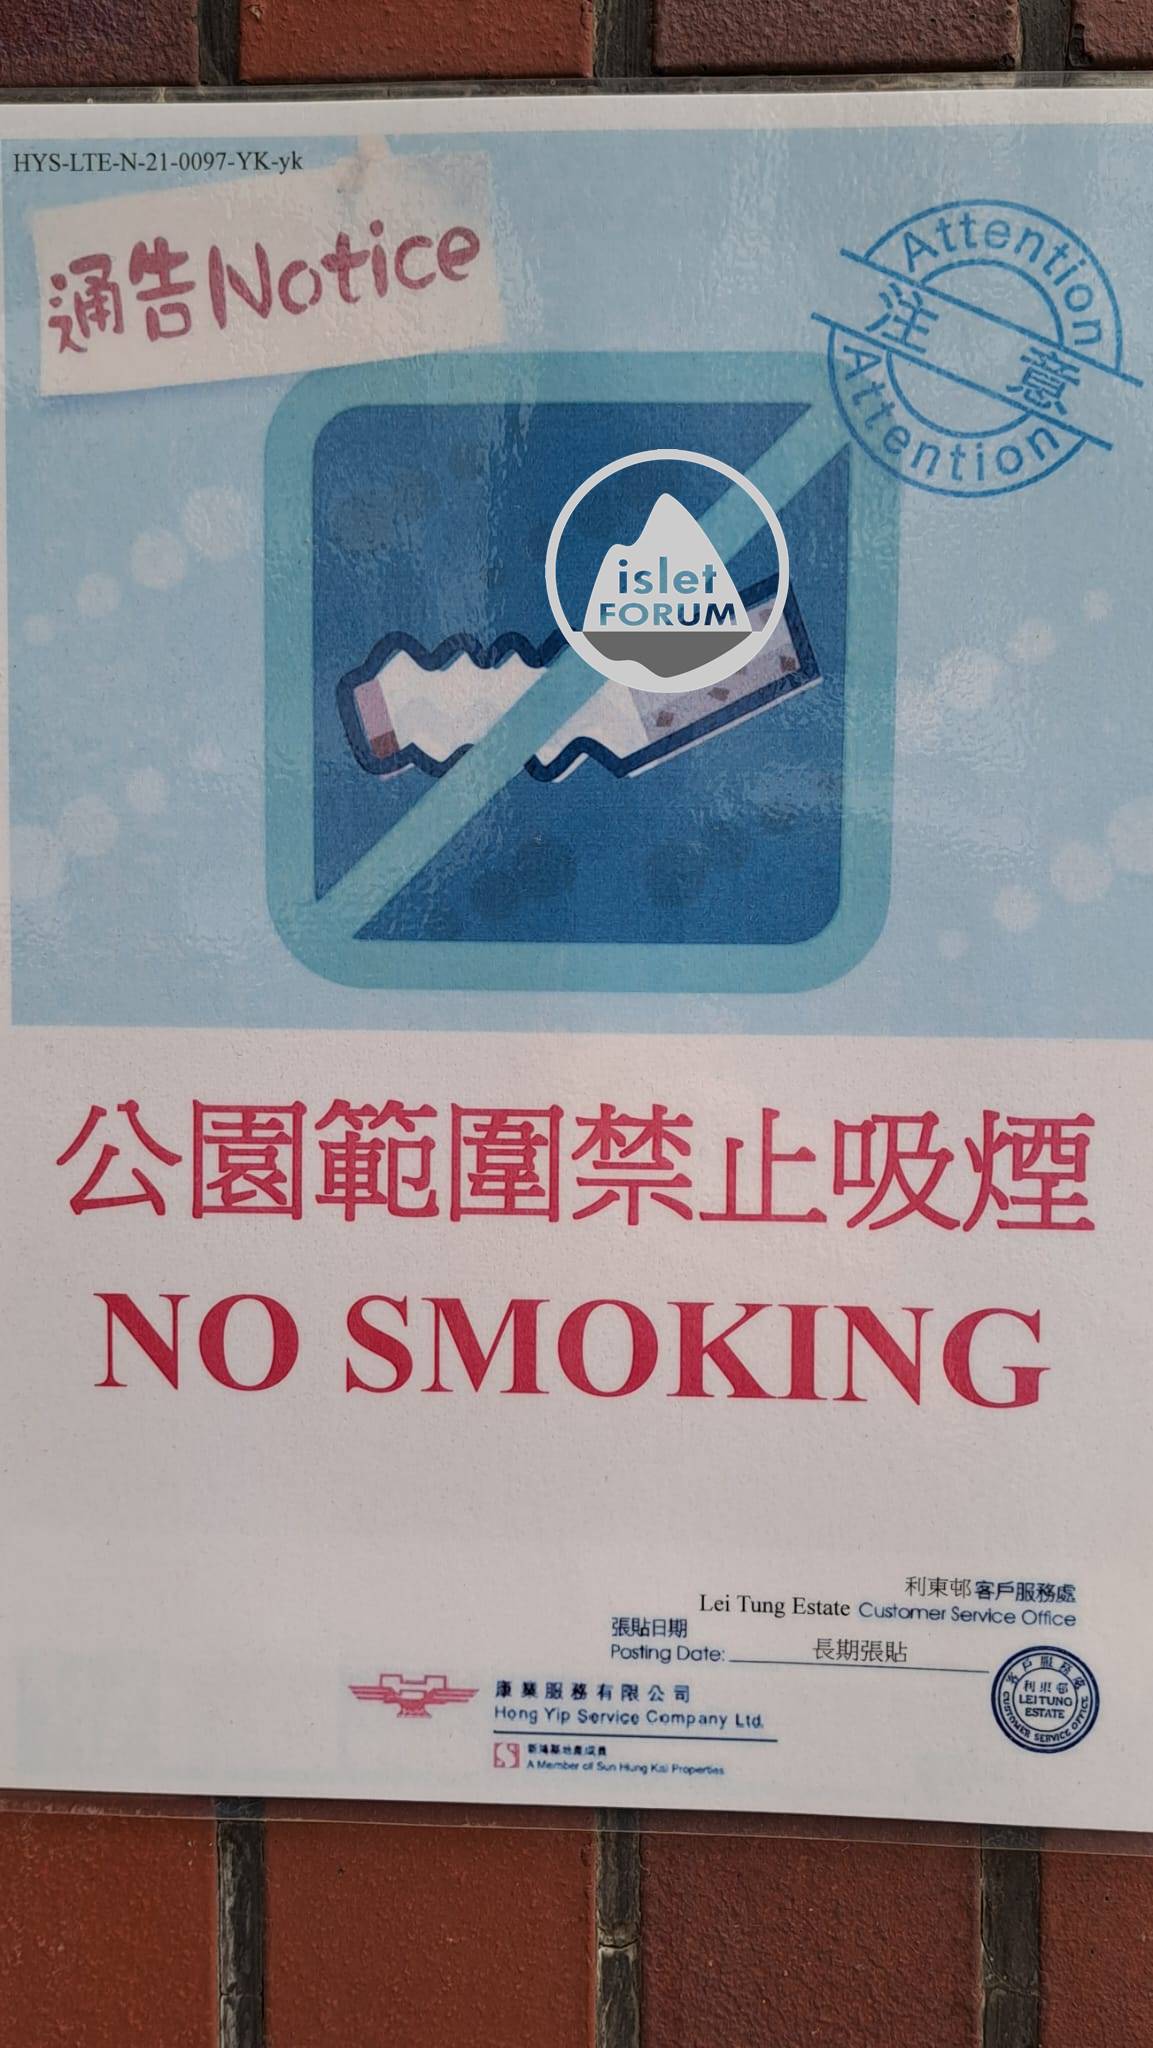 禁止吸煙 No Smoking (6).jpeg